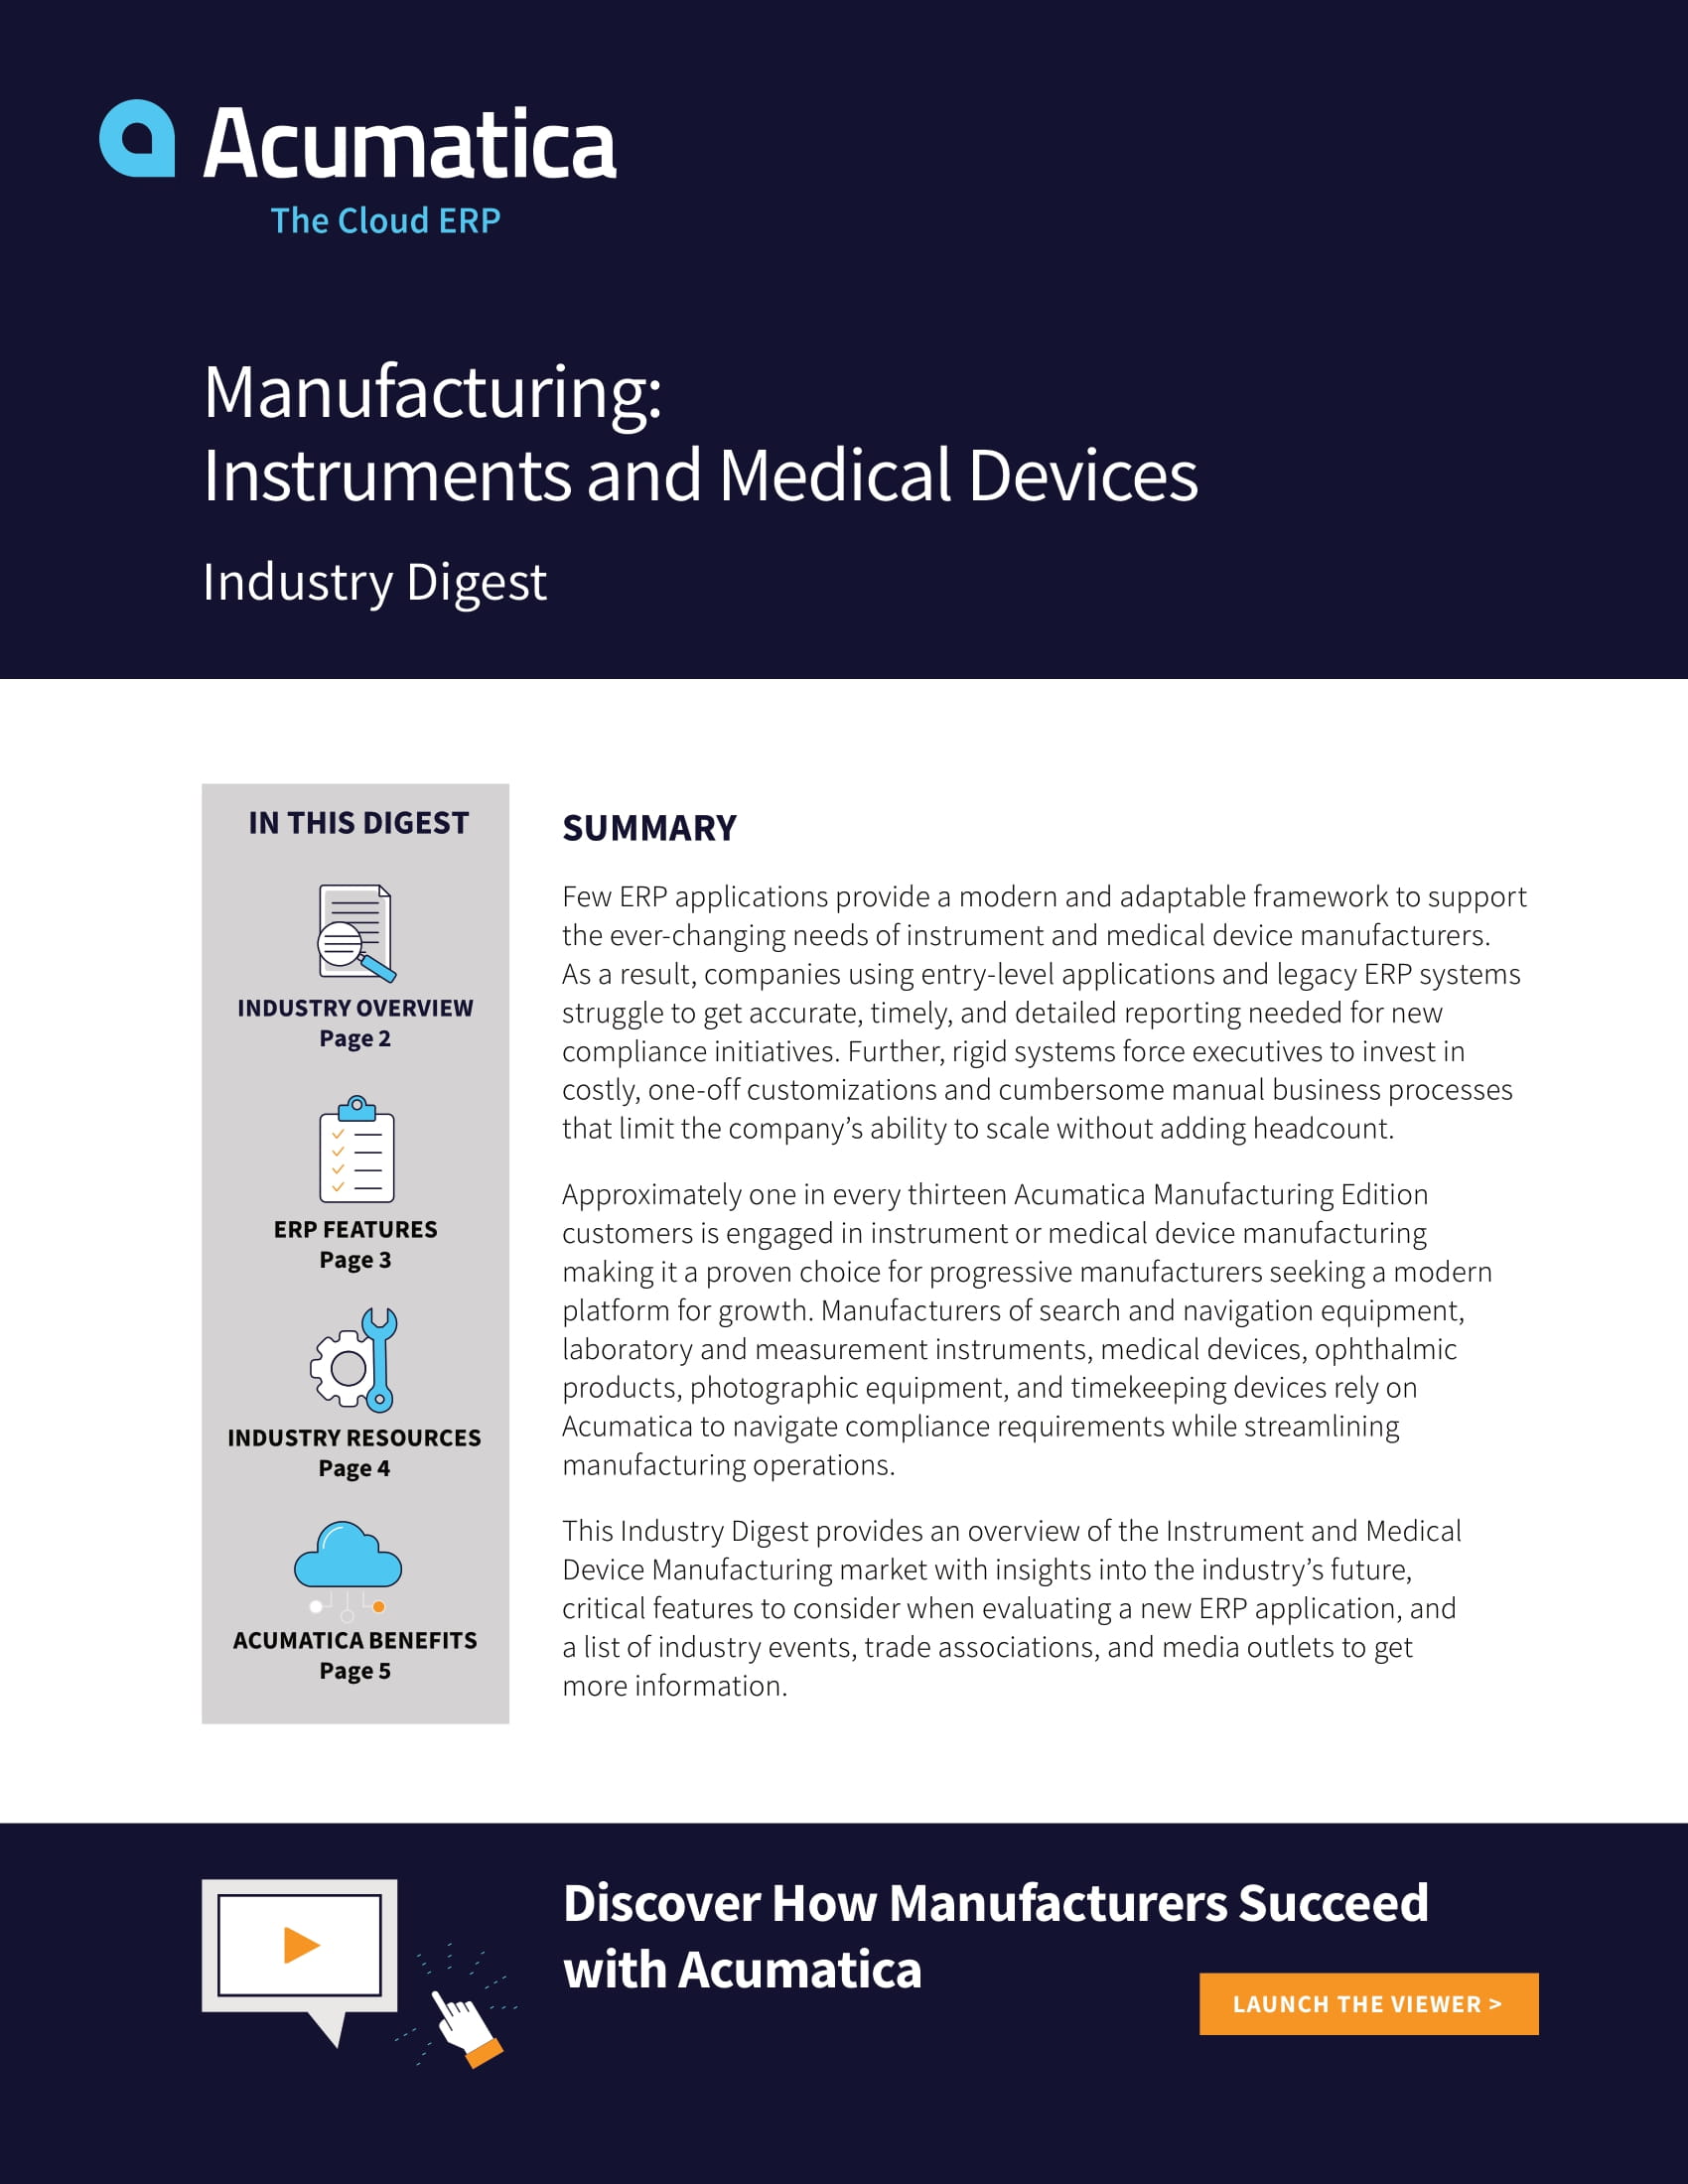 Pourquoi les fabricants d’instruments et de dispositifs médicaux ont besoin d’une solution ERP moderne